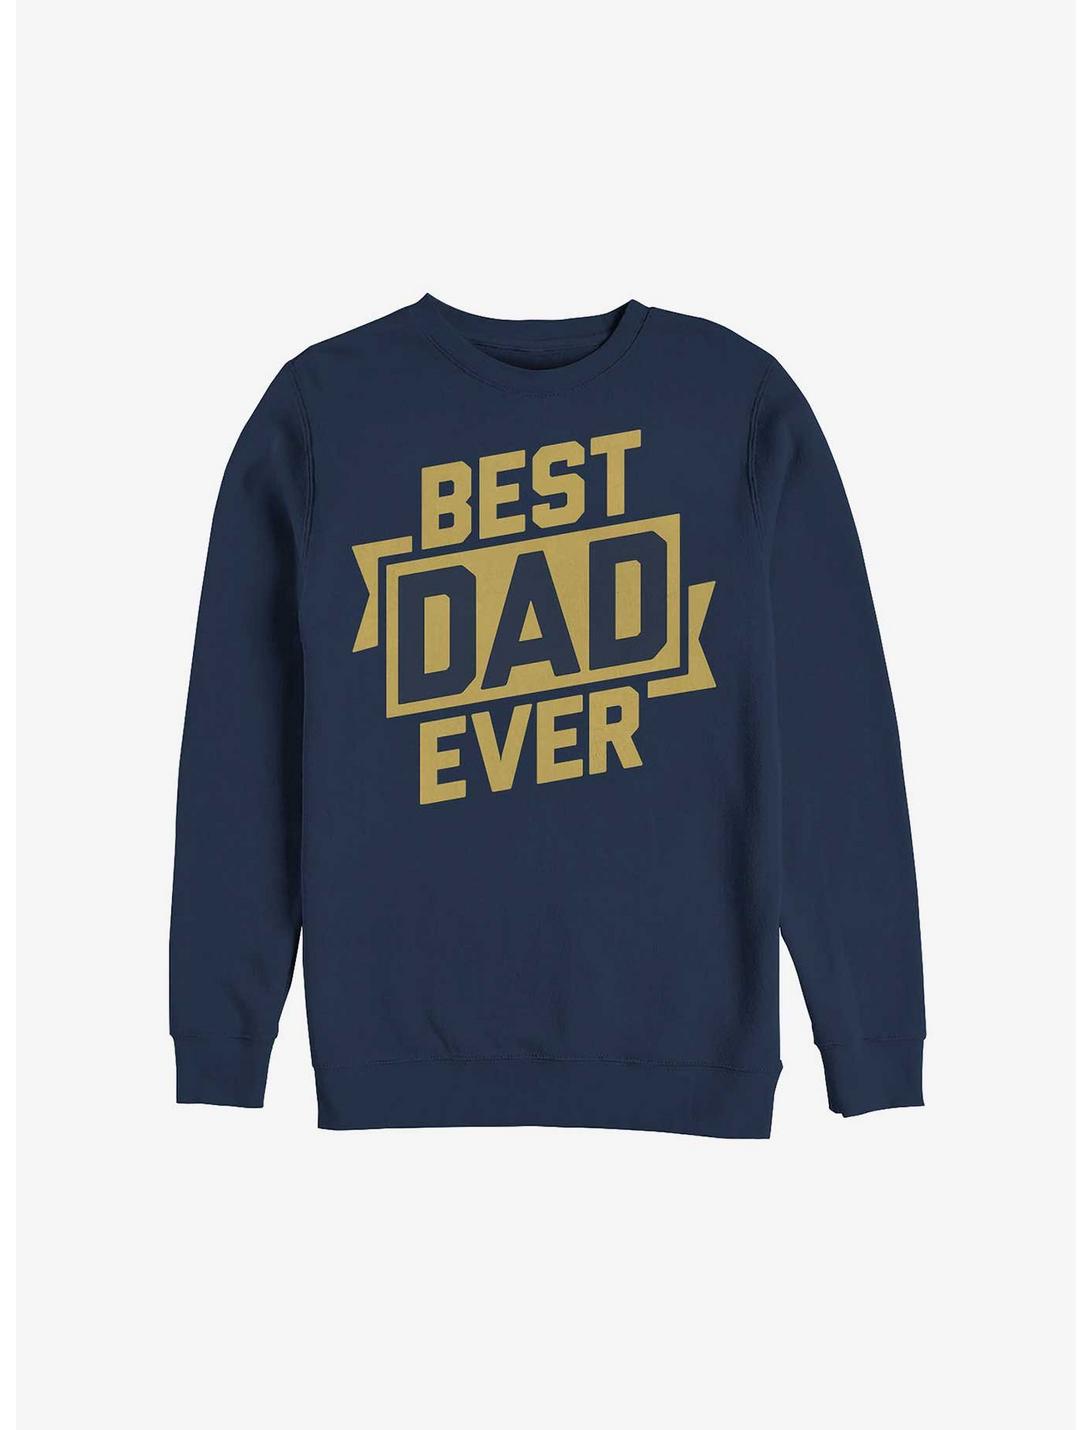 Best Dad Ever Sweatshirt, NAVY, hi-res